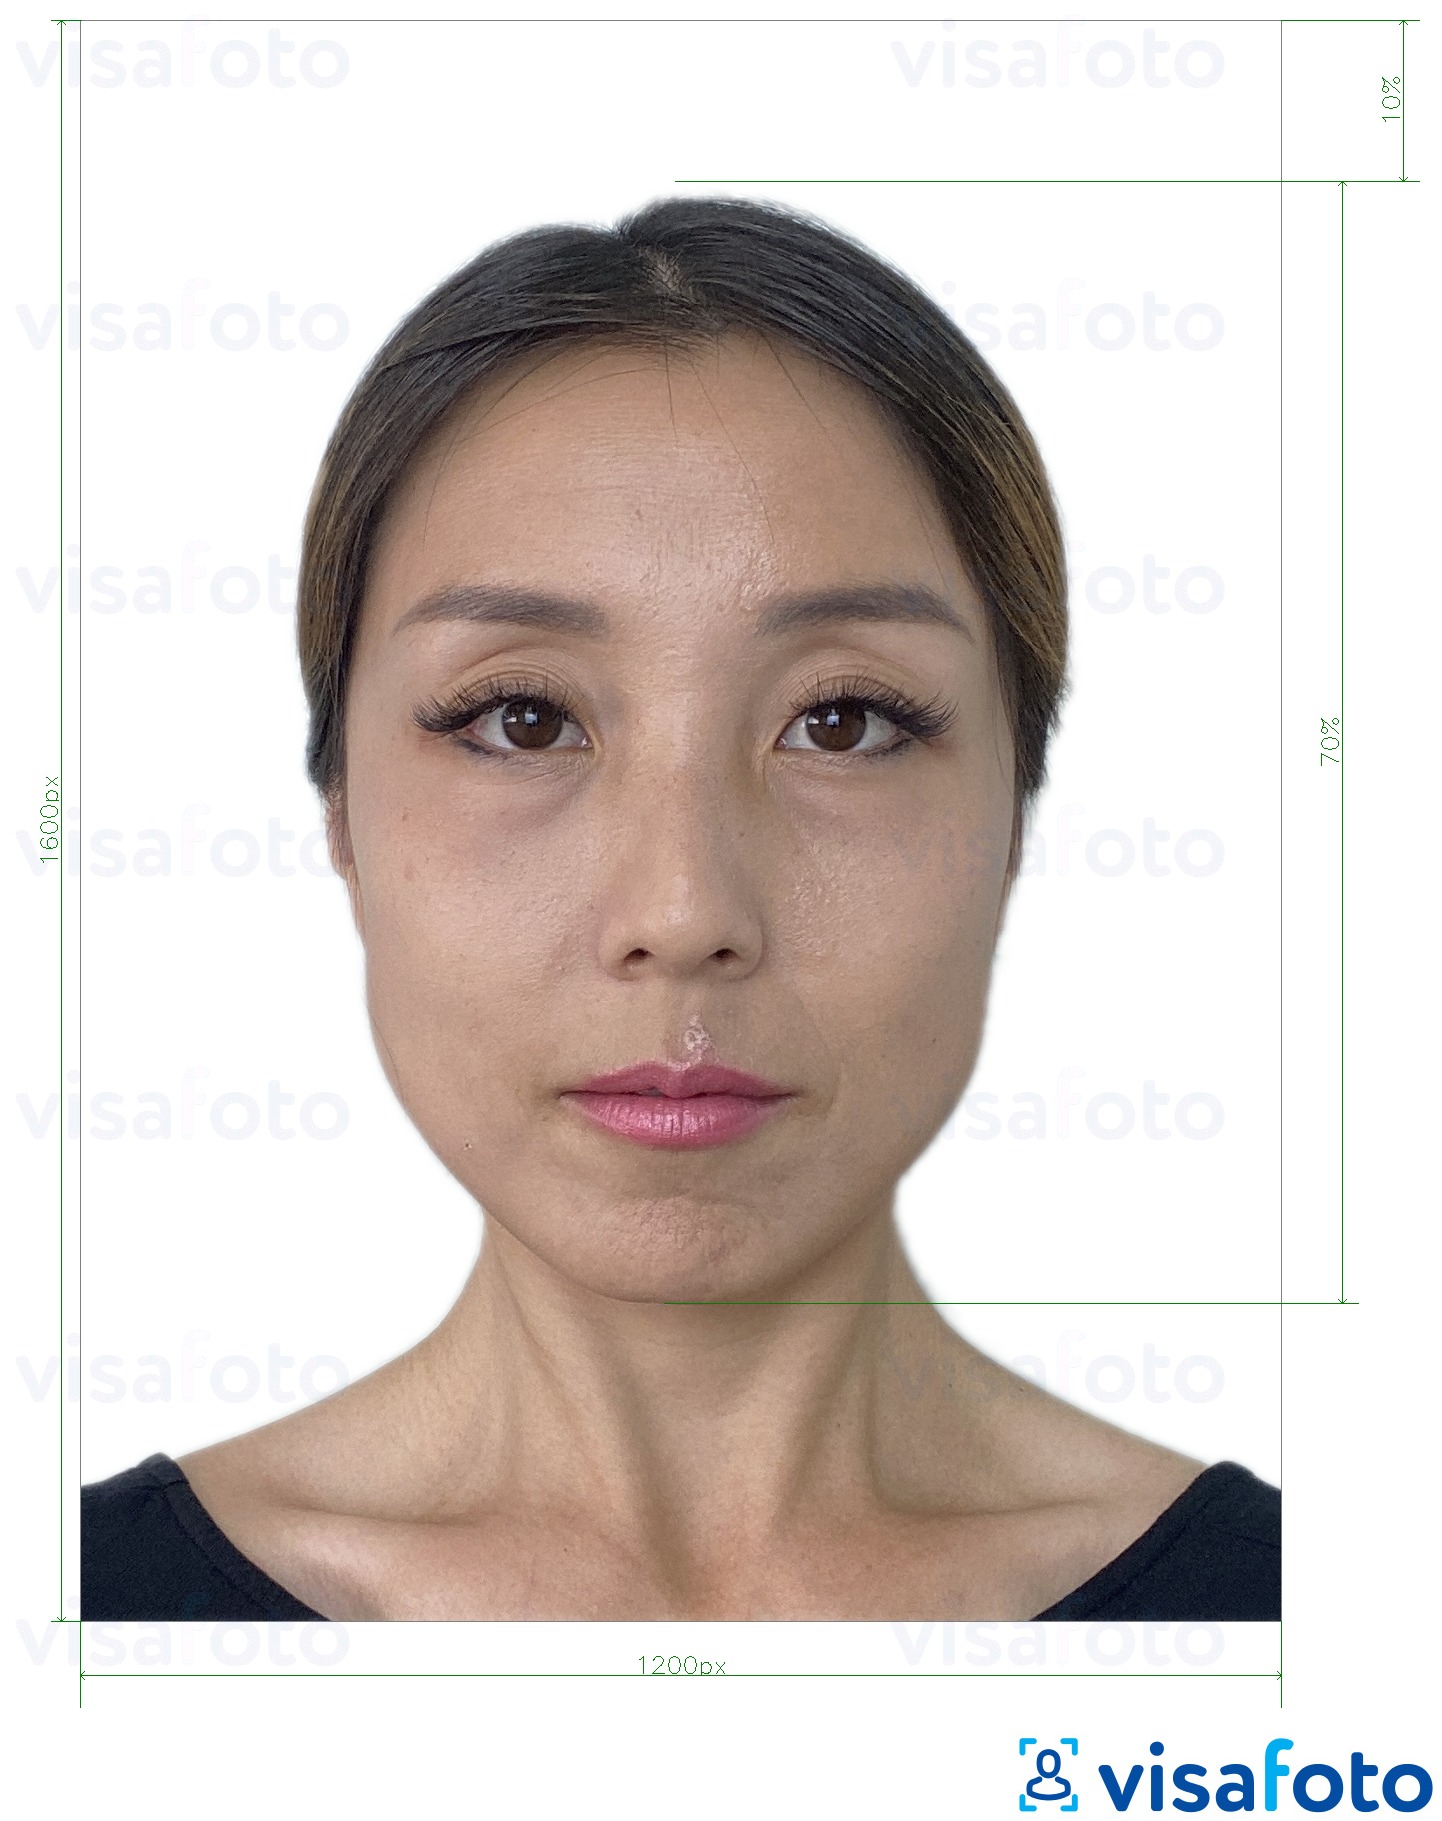 Esempio di foto per E-passport online di Hong Kong 1200x1600 pixel con specifiche delle dimensioni esatte